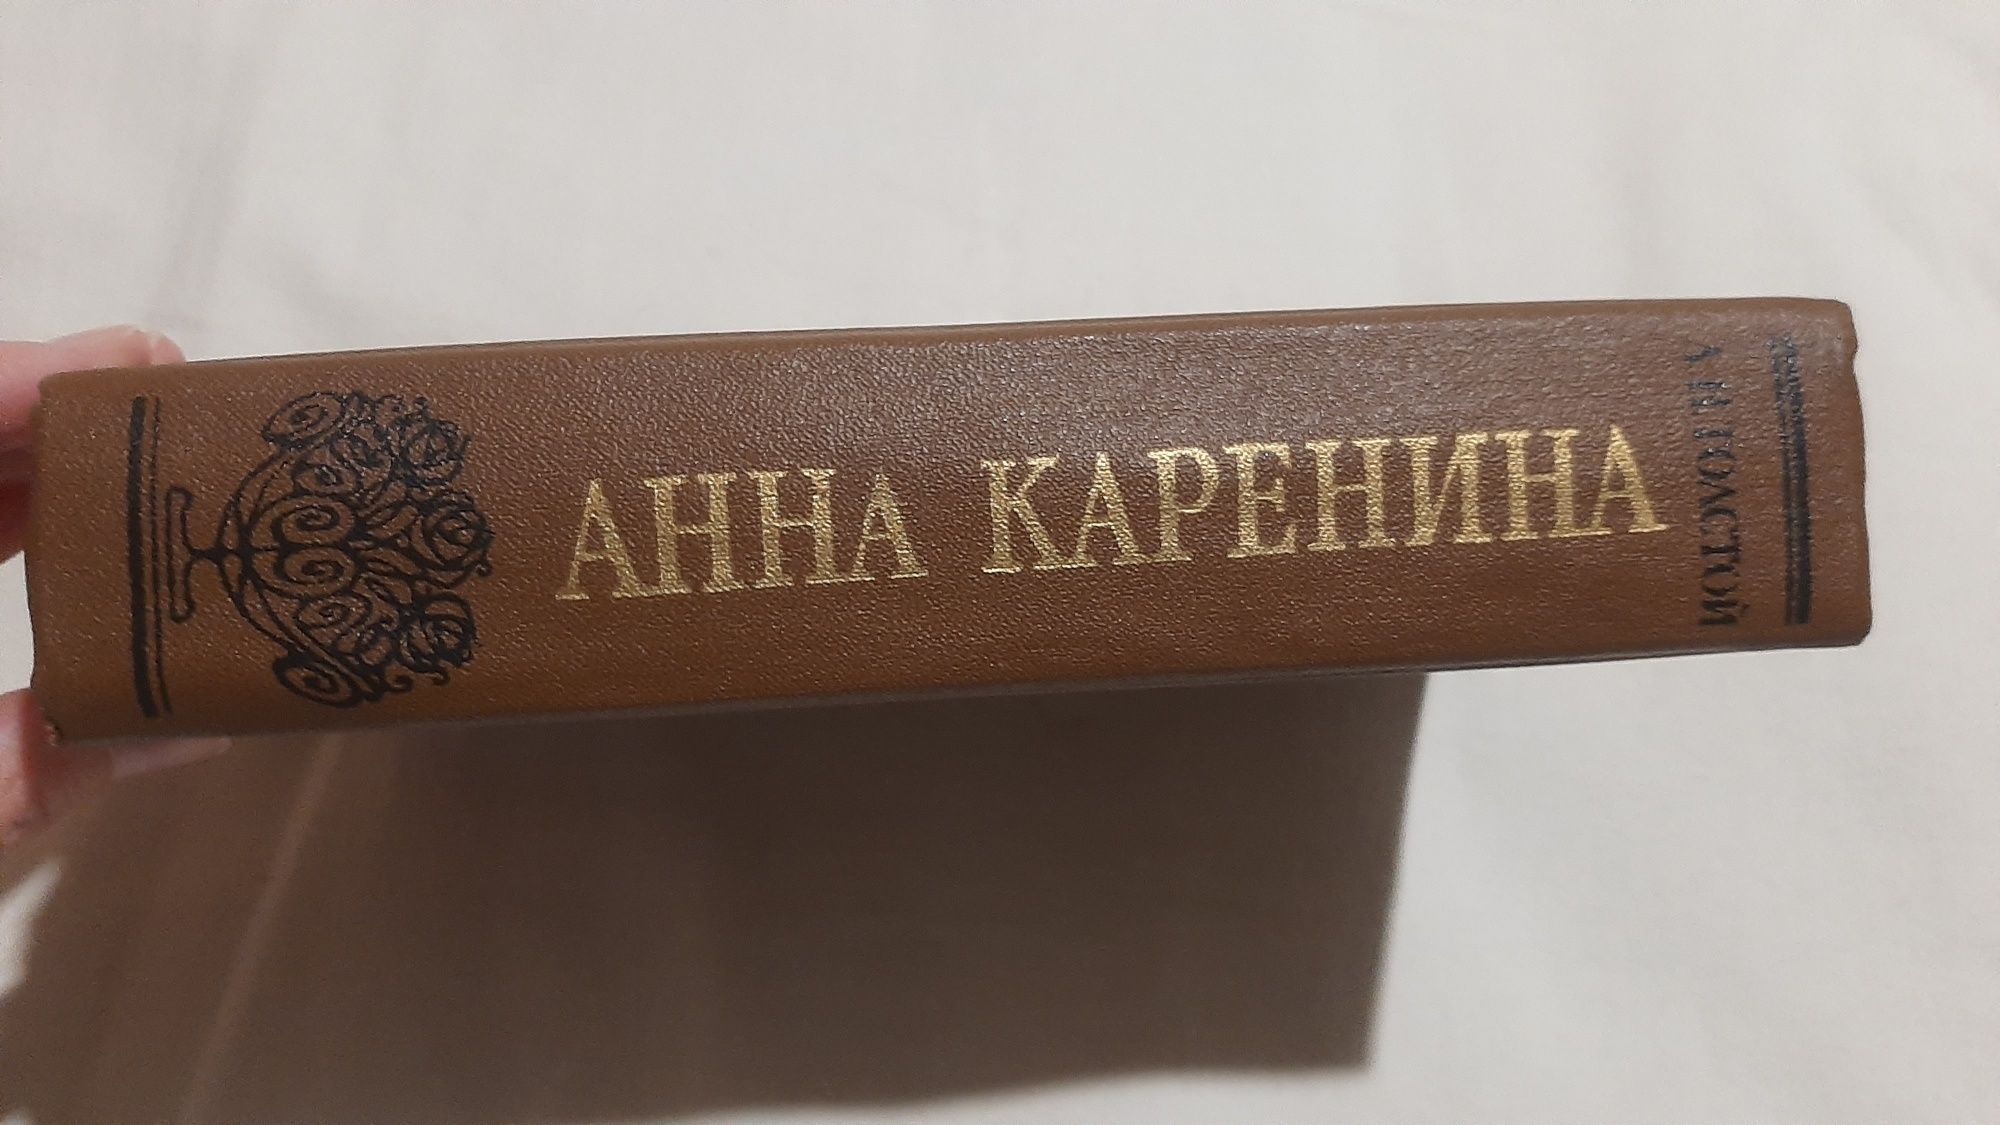 Книга "Анна Каренина" Л.Н.Толстой. Как новая